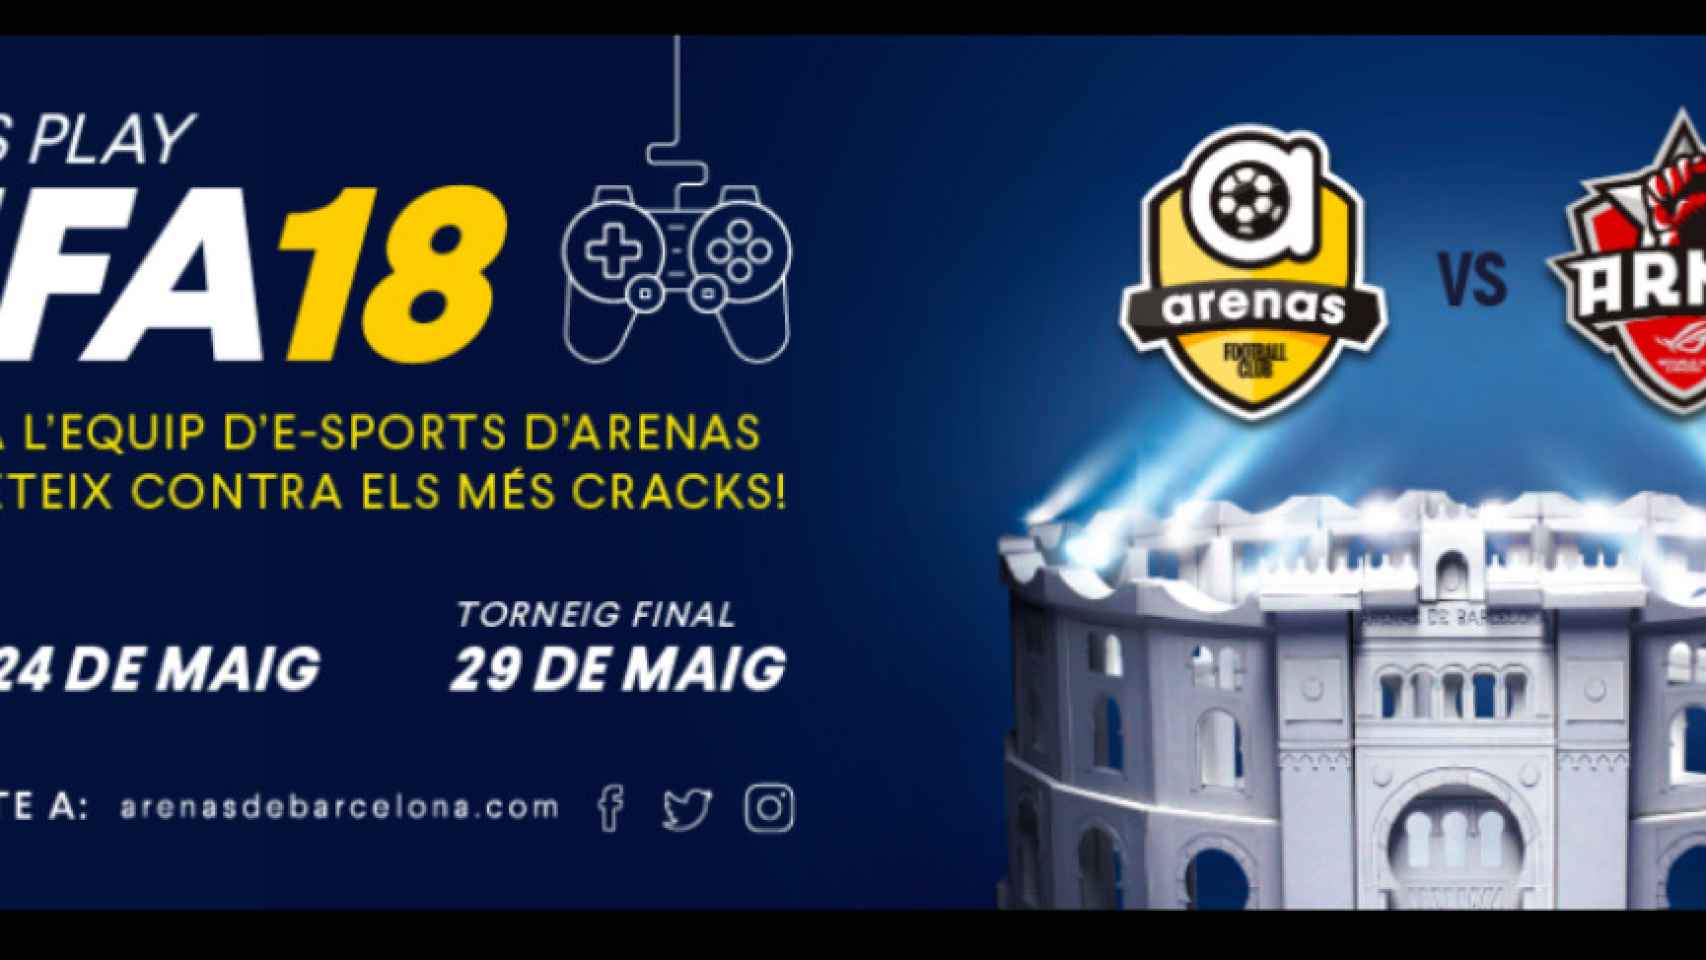 FIFA18 en Las Arenas / ARENAS BCN